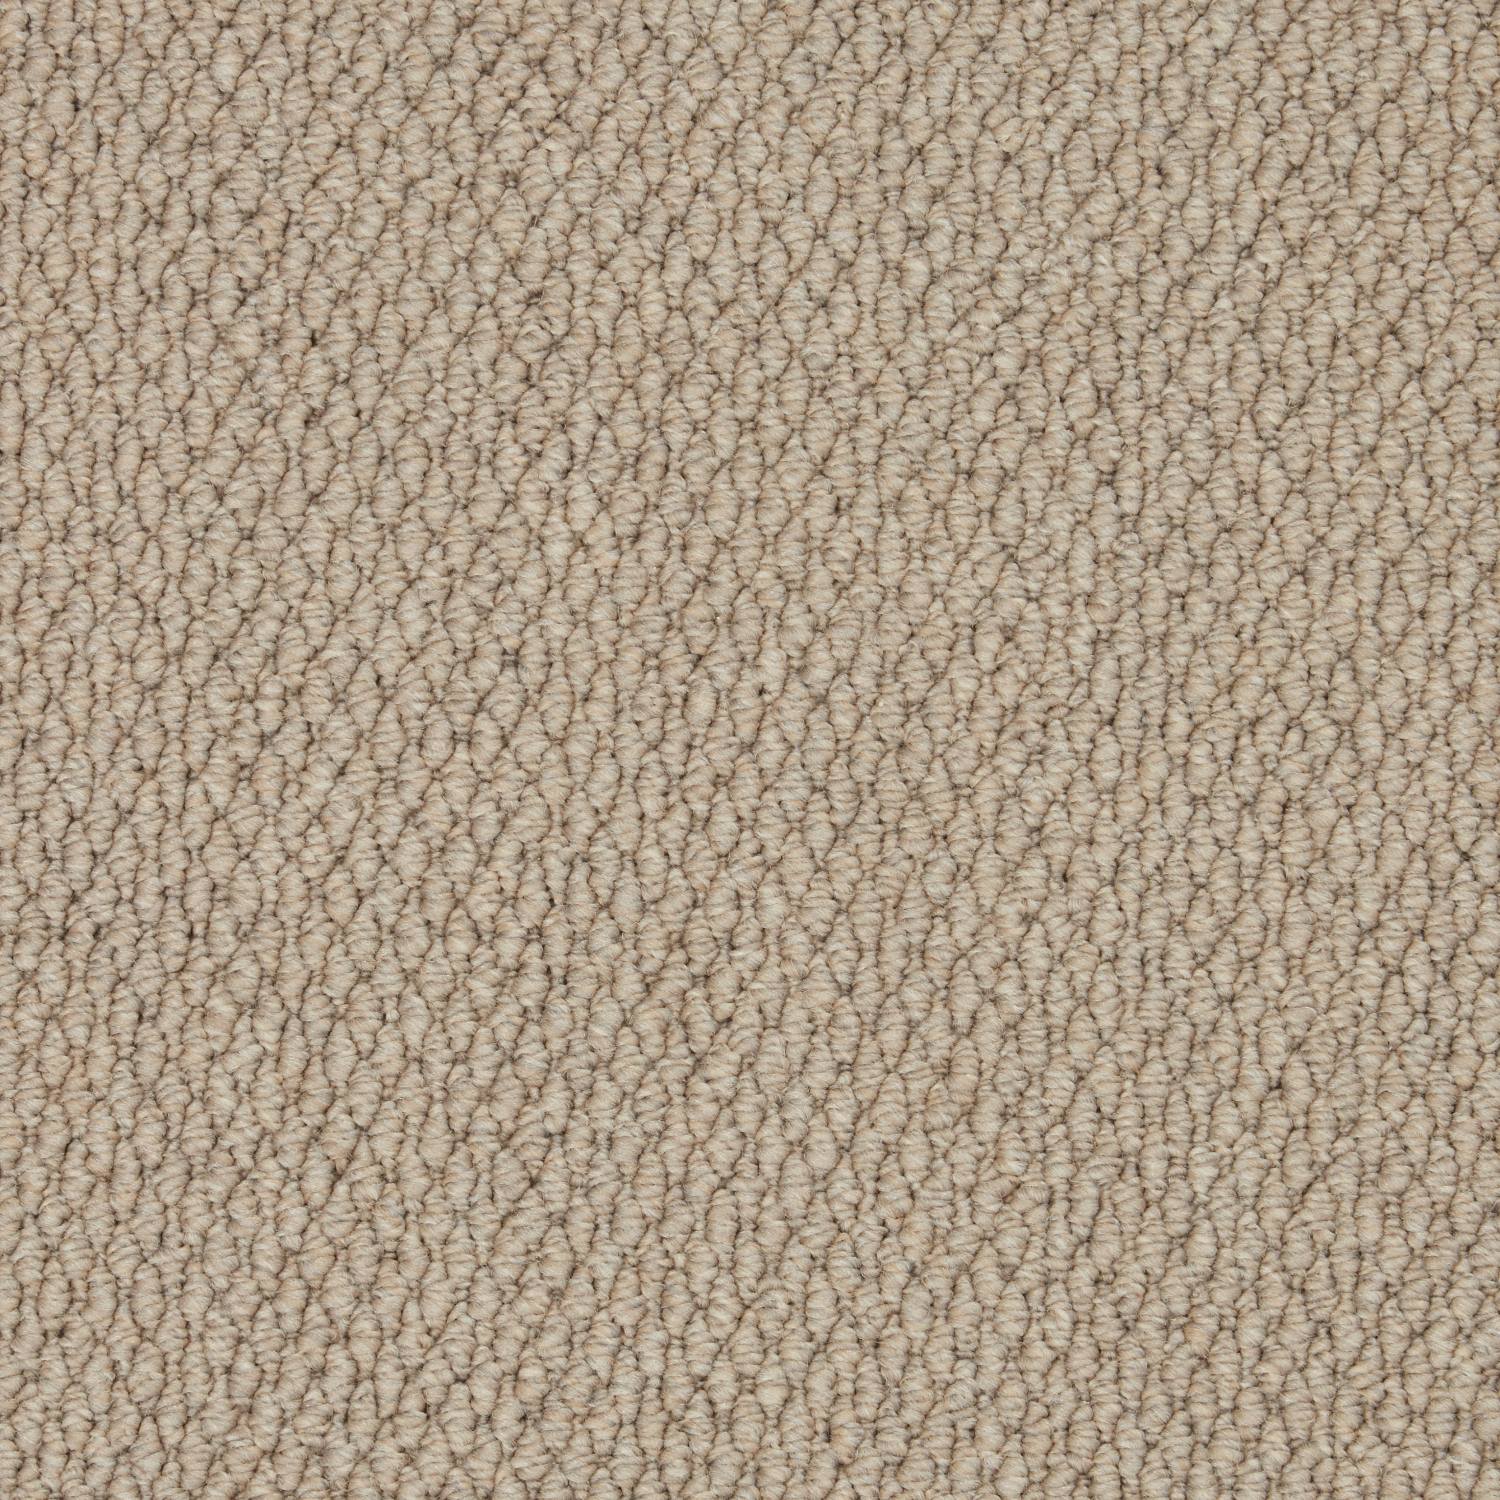 Rural Textures Loop Carpet - Roebuck Weave